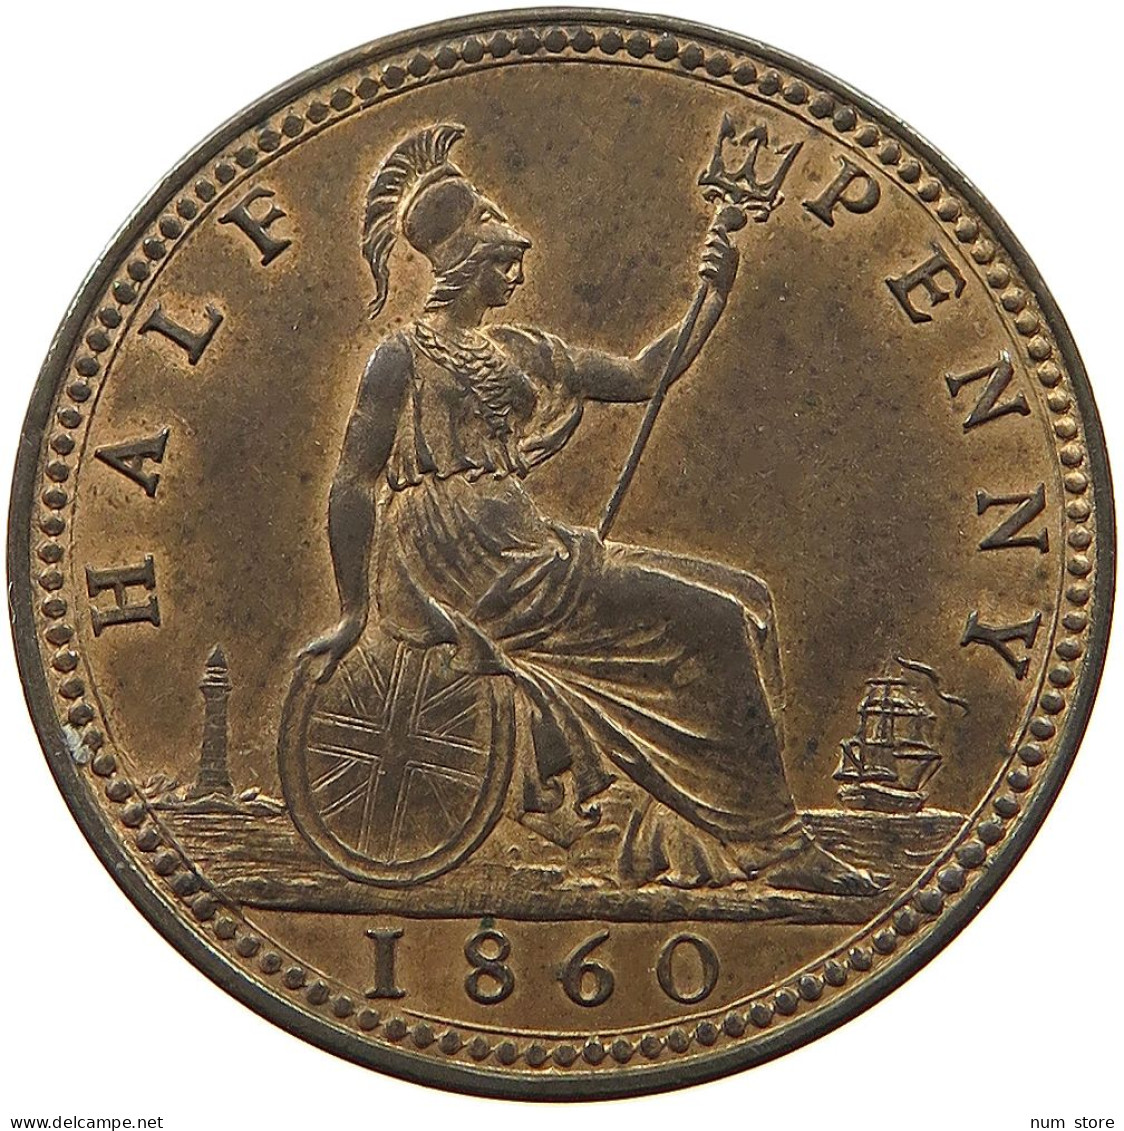 GREAT BRITAIN HALF PENNY 1860 Victoria 1837-1901 #t058 0537 - C. 1/2 Penny